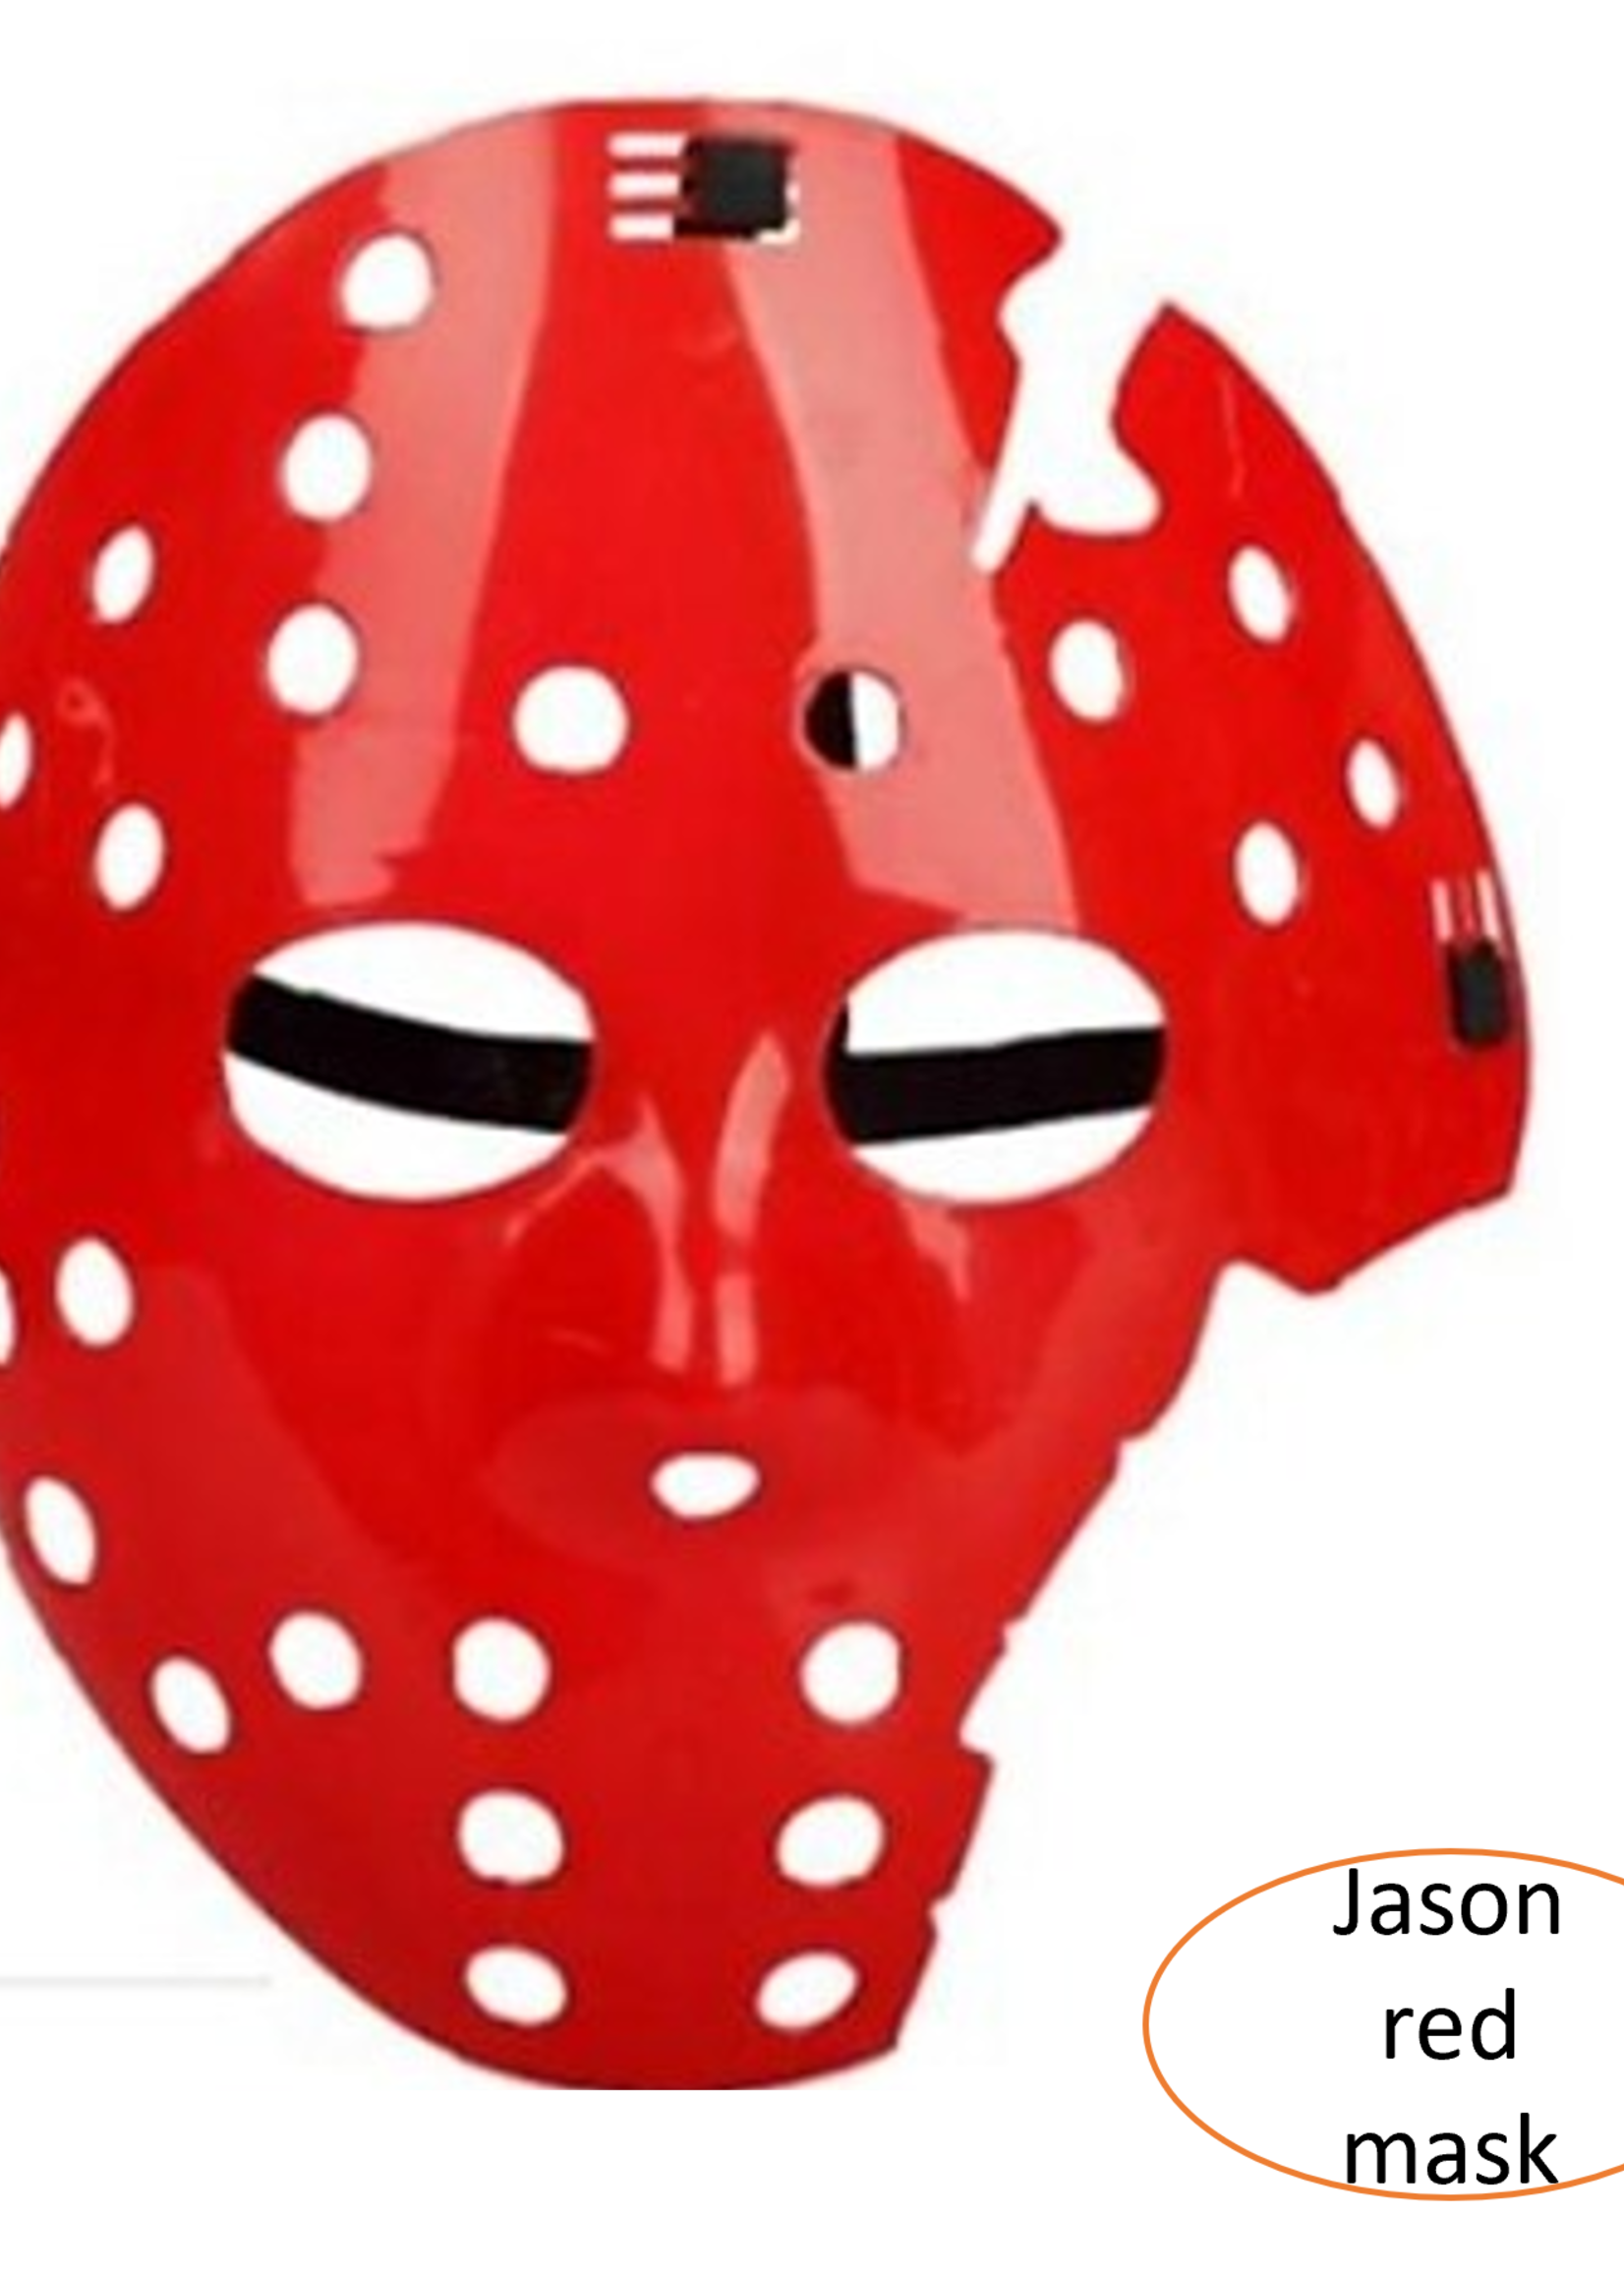 Jason mask red